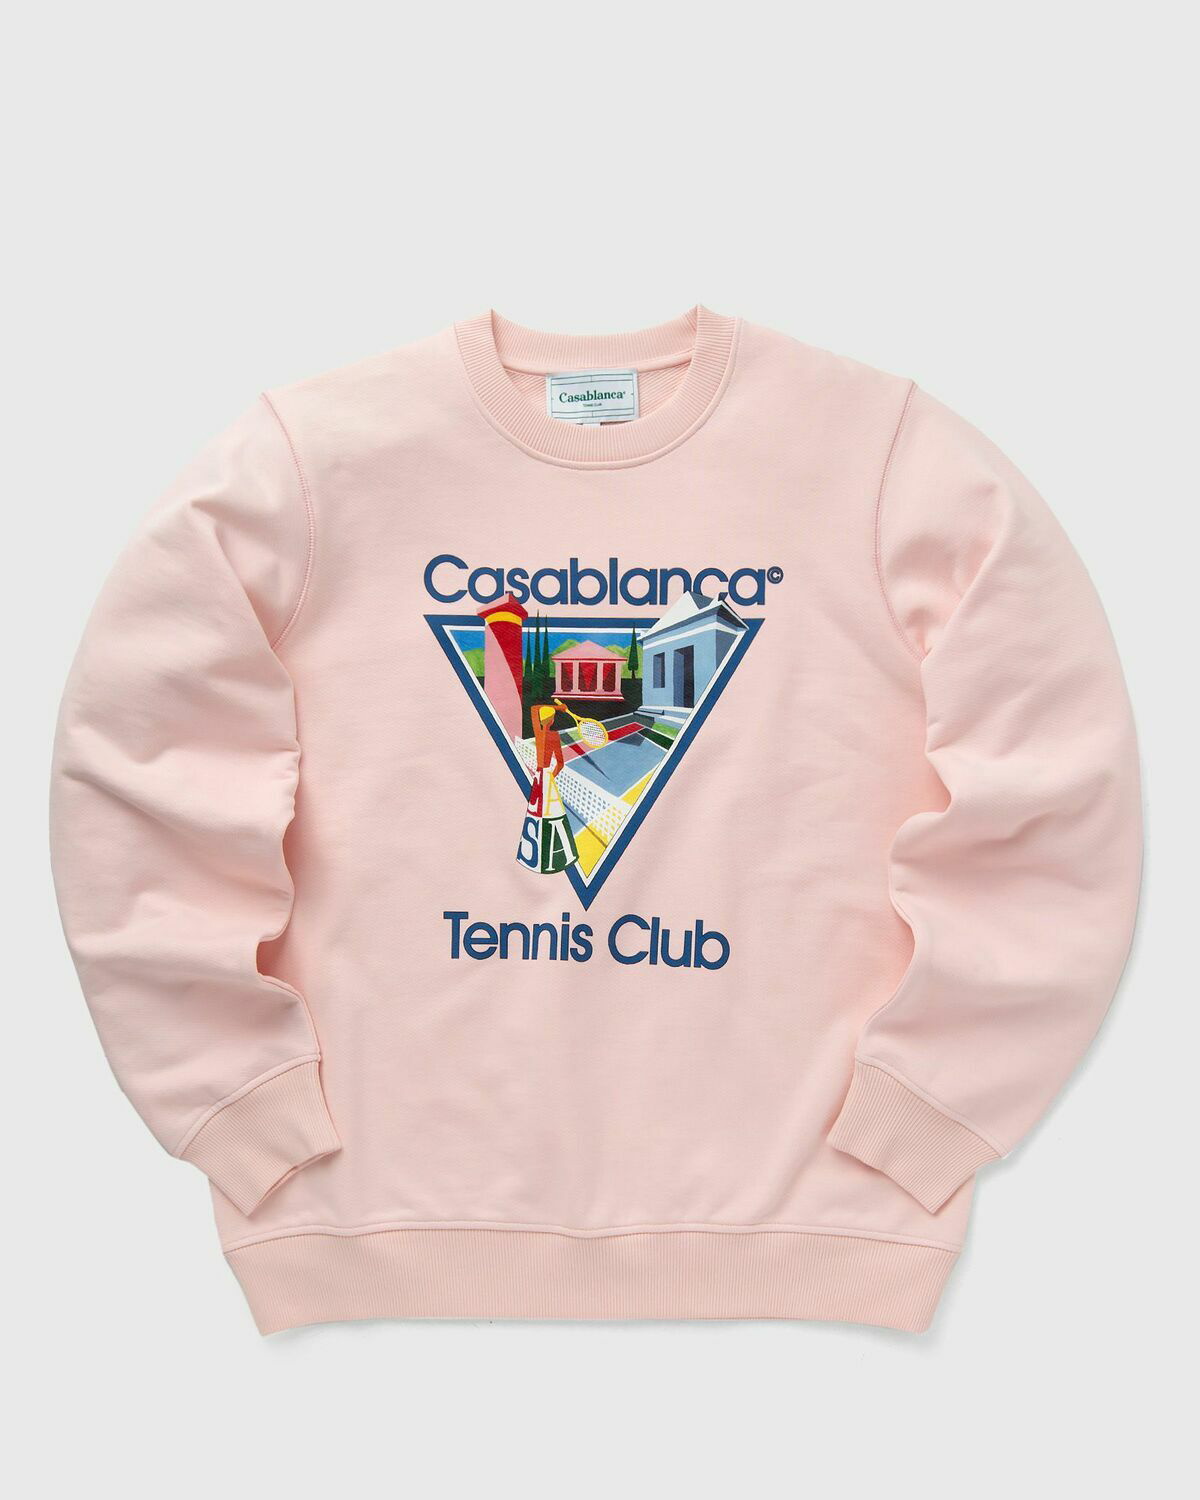 Casablanca La Joueuse Printed Sweatshirt Pink - Mens - Sweatshirts